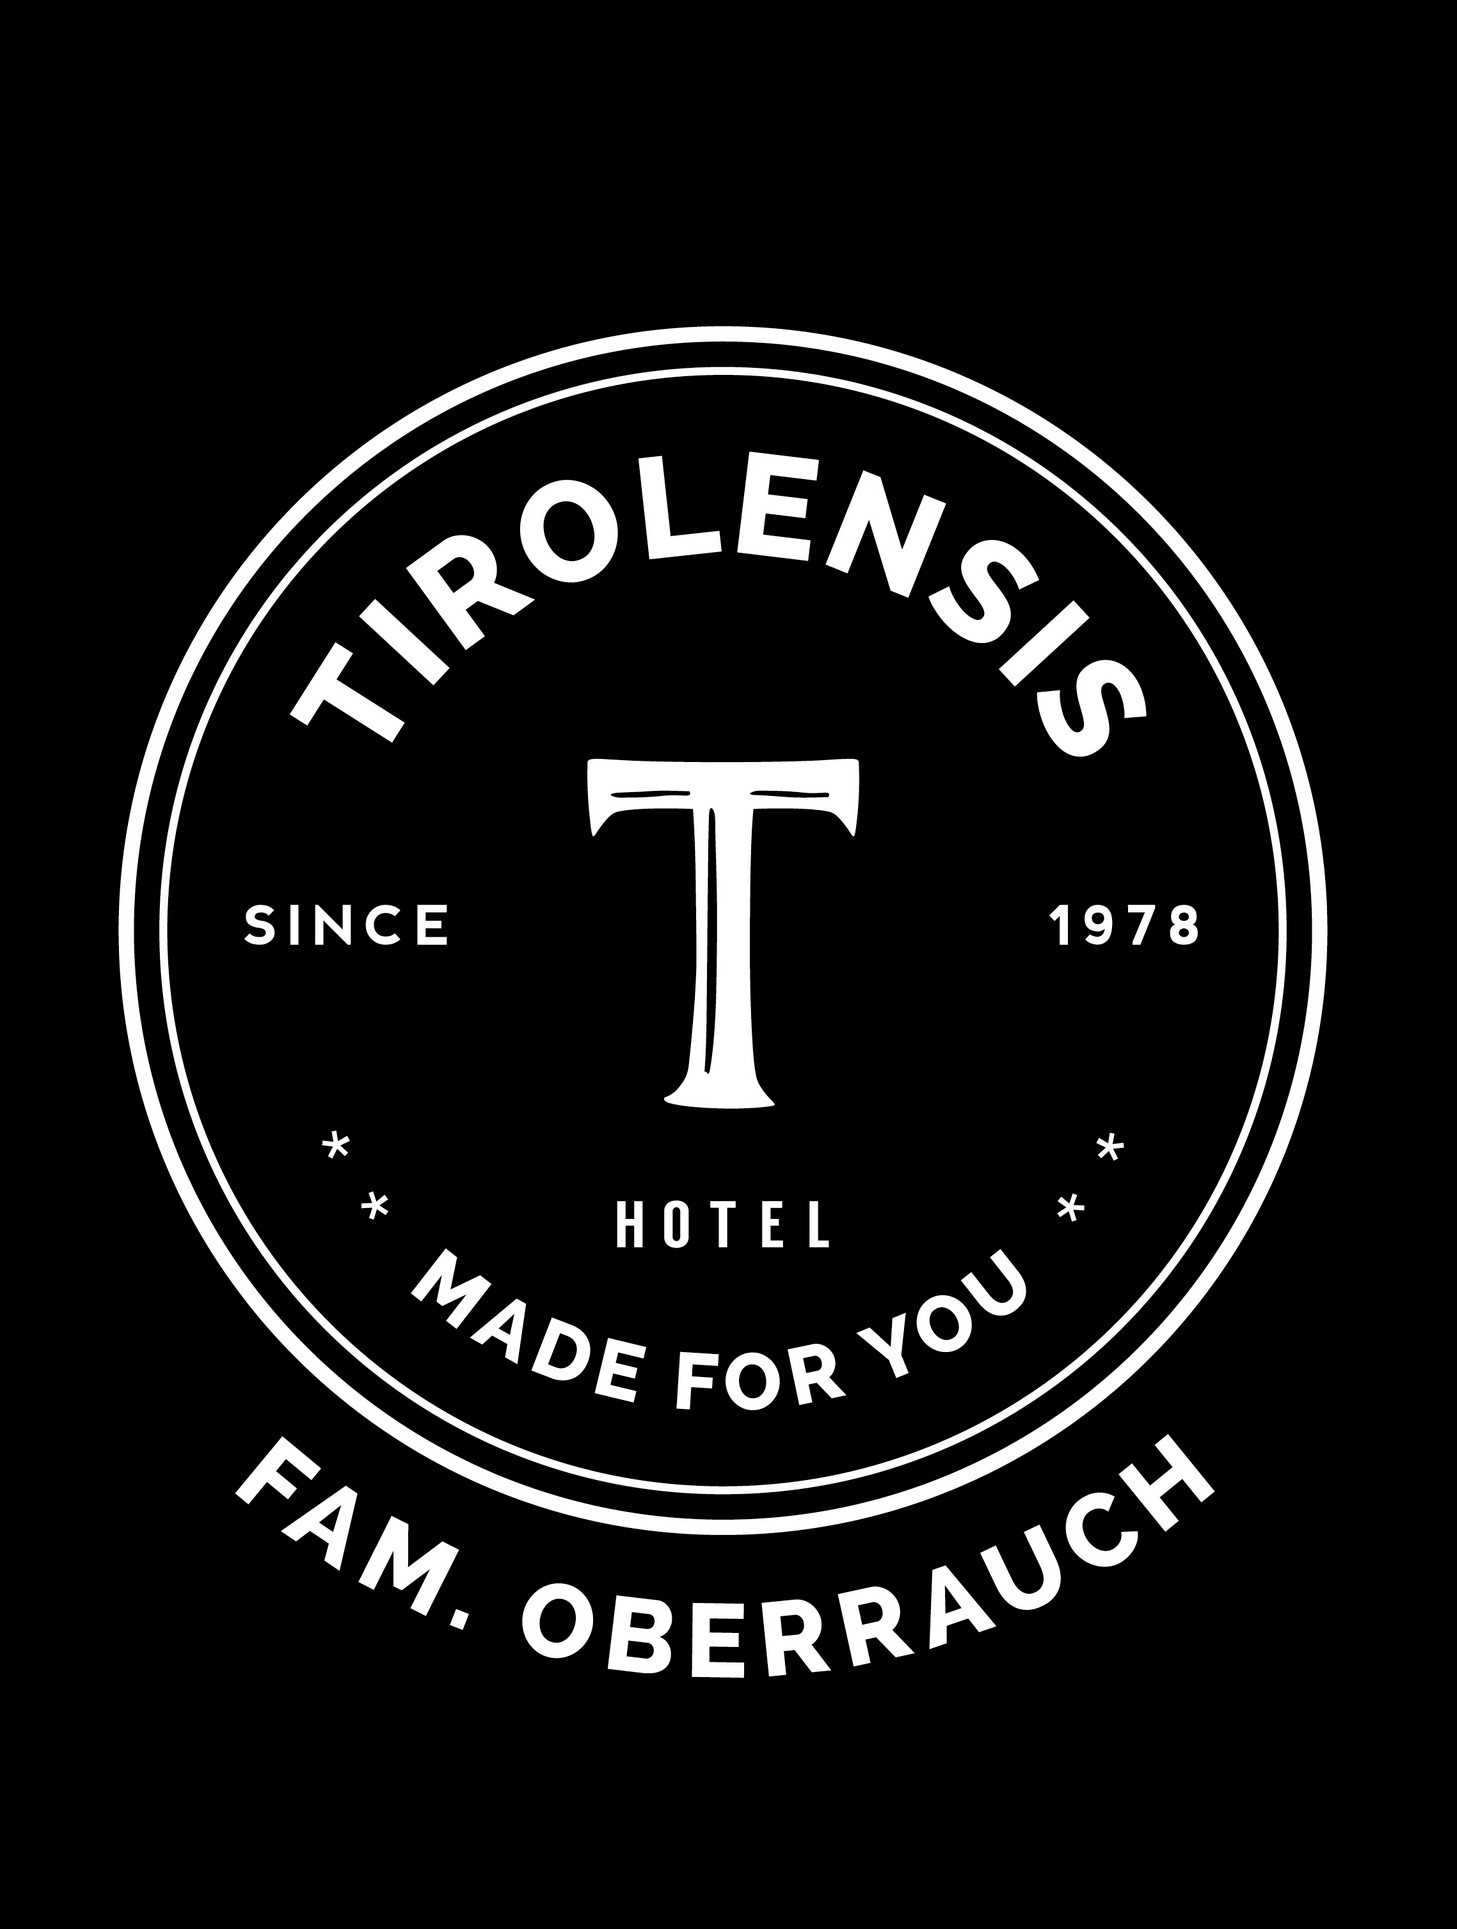 Hotel Tirolensis